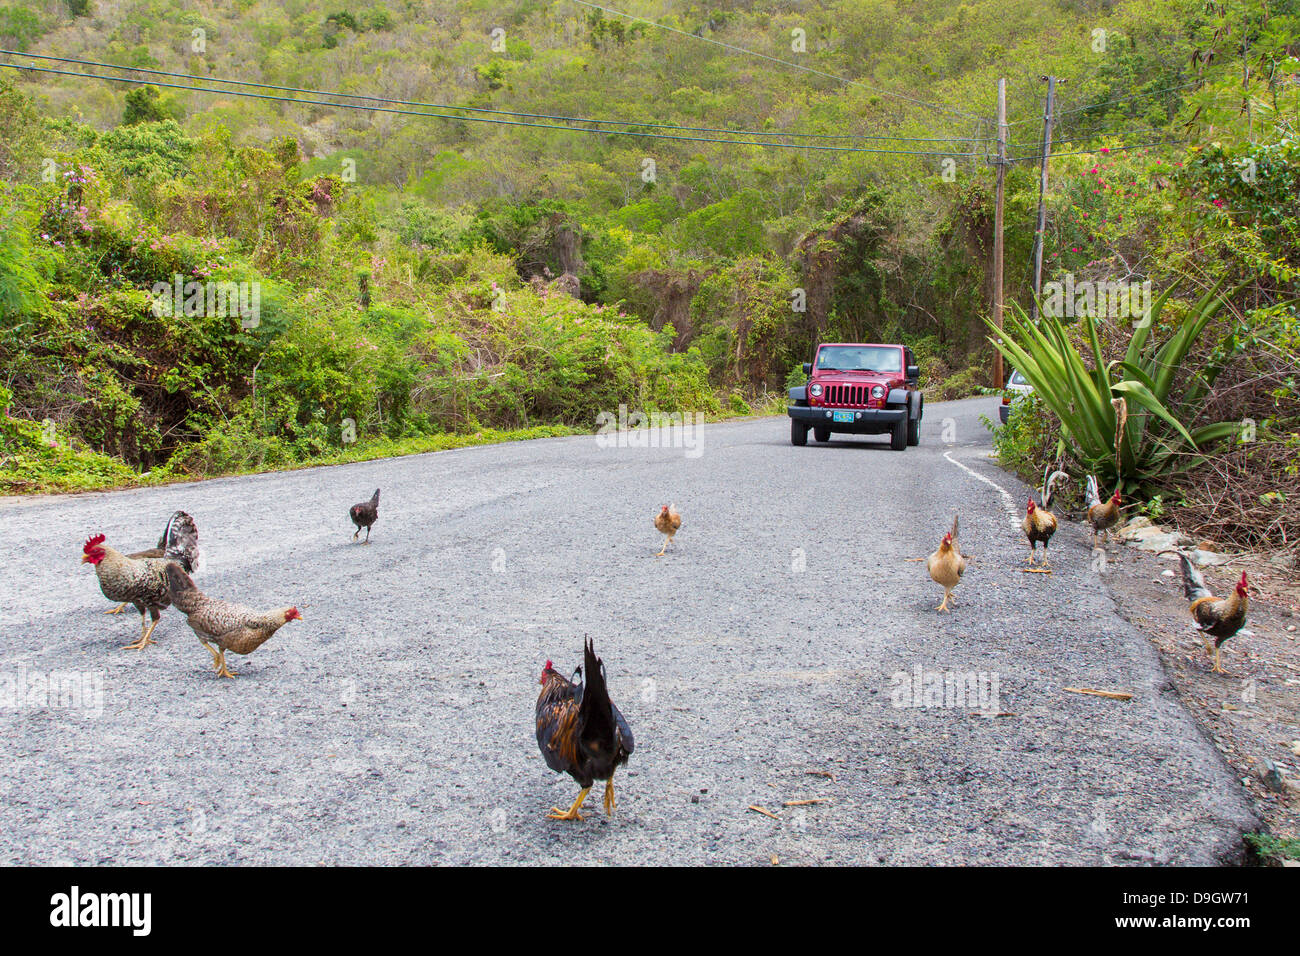 Poulets dans la route sur l'île des Caraïbes de St John dans les îles Vierges américaines Banque D'Images